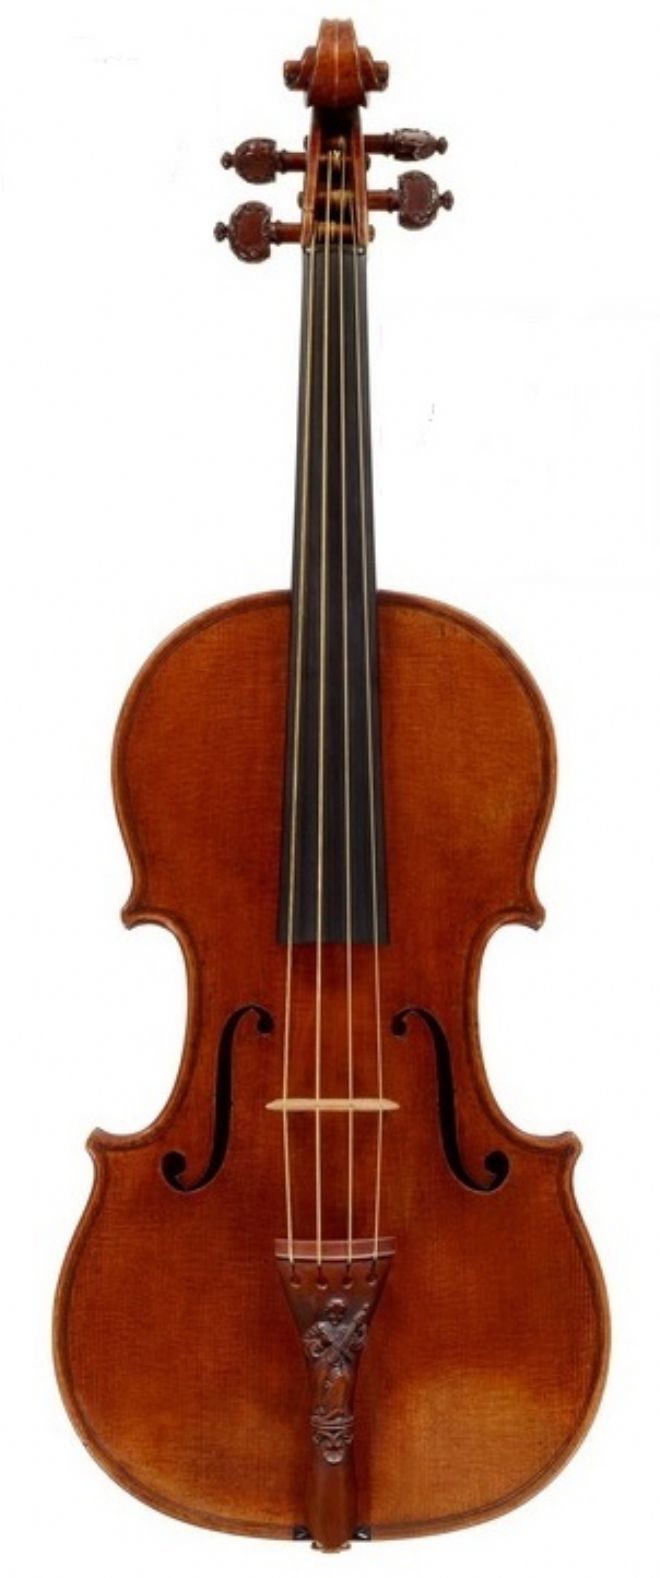 Stradivarius tarafndan 1721 ylnda yaplan Lady Blunt isimli keman dnyann en pahal algs konumunda.
